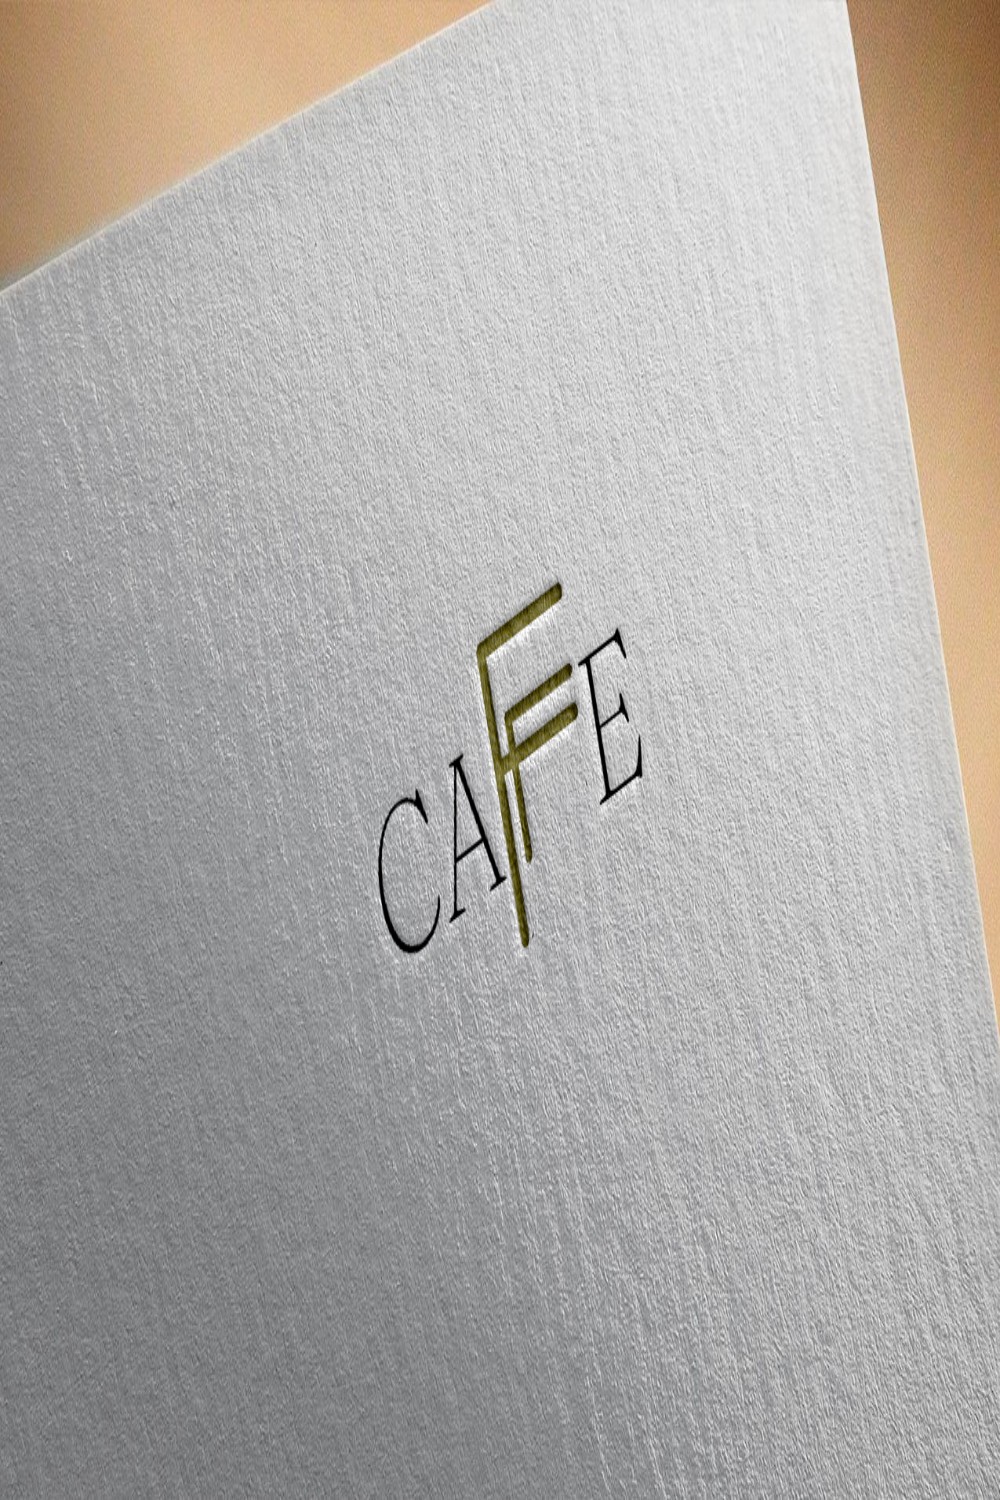 Cafe Logo Design Template Pinterest image.